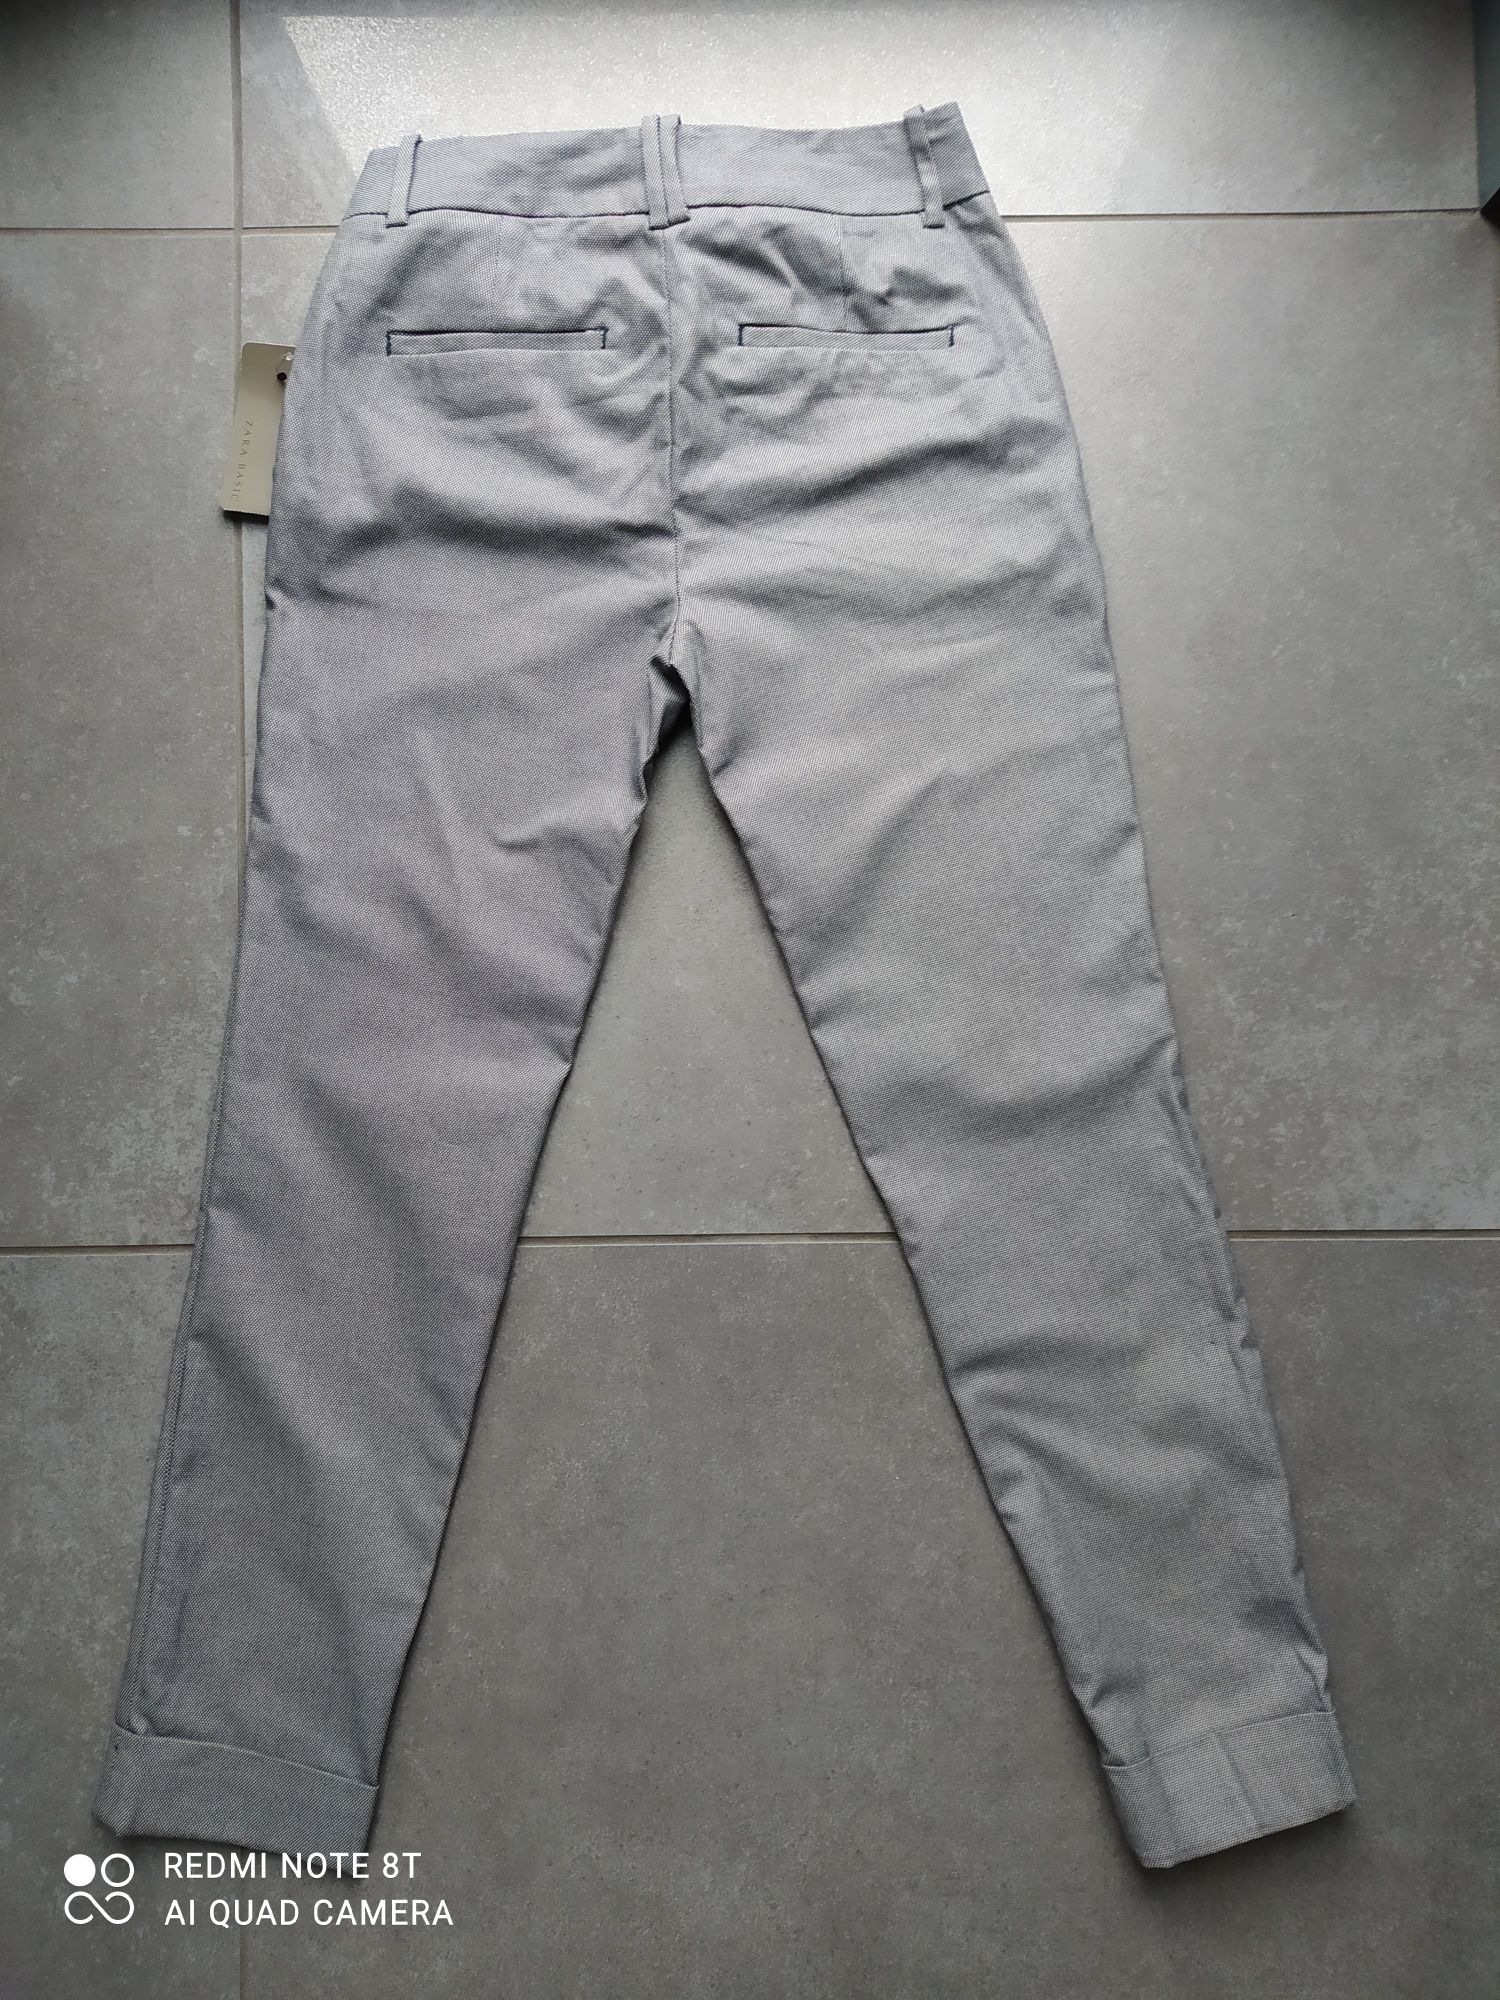 Spodnie - Zara, rozmiar XS